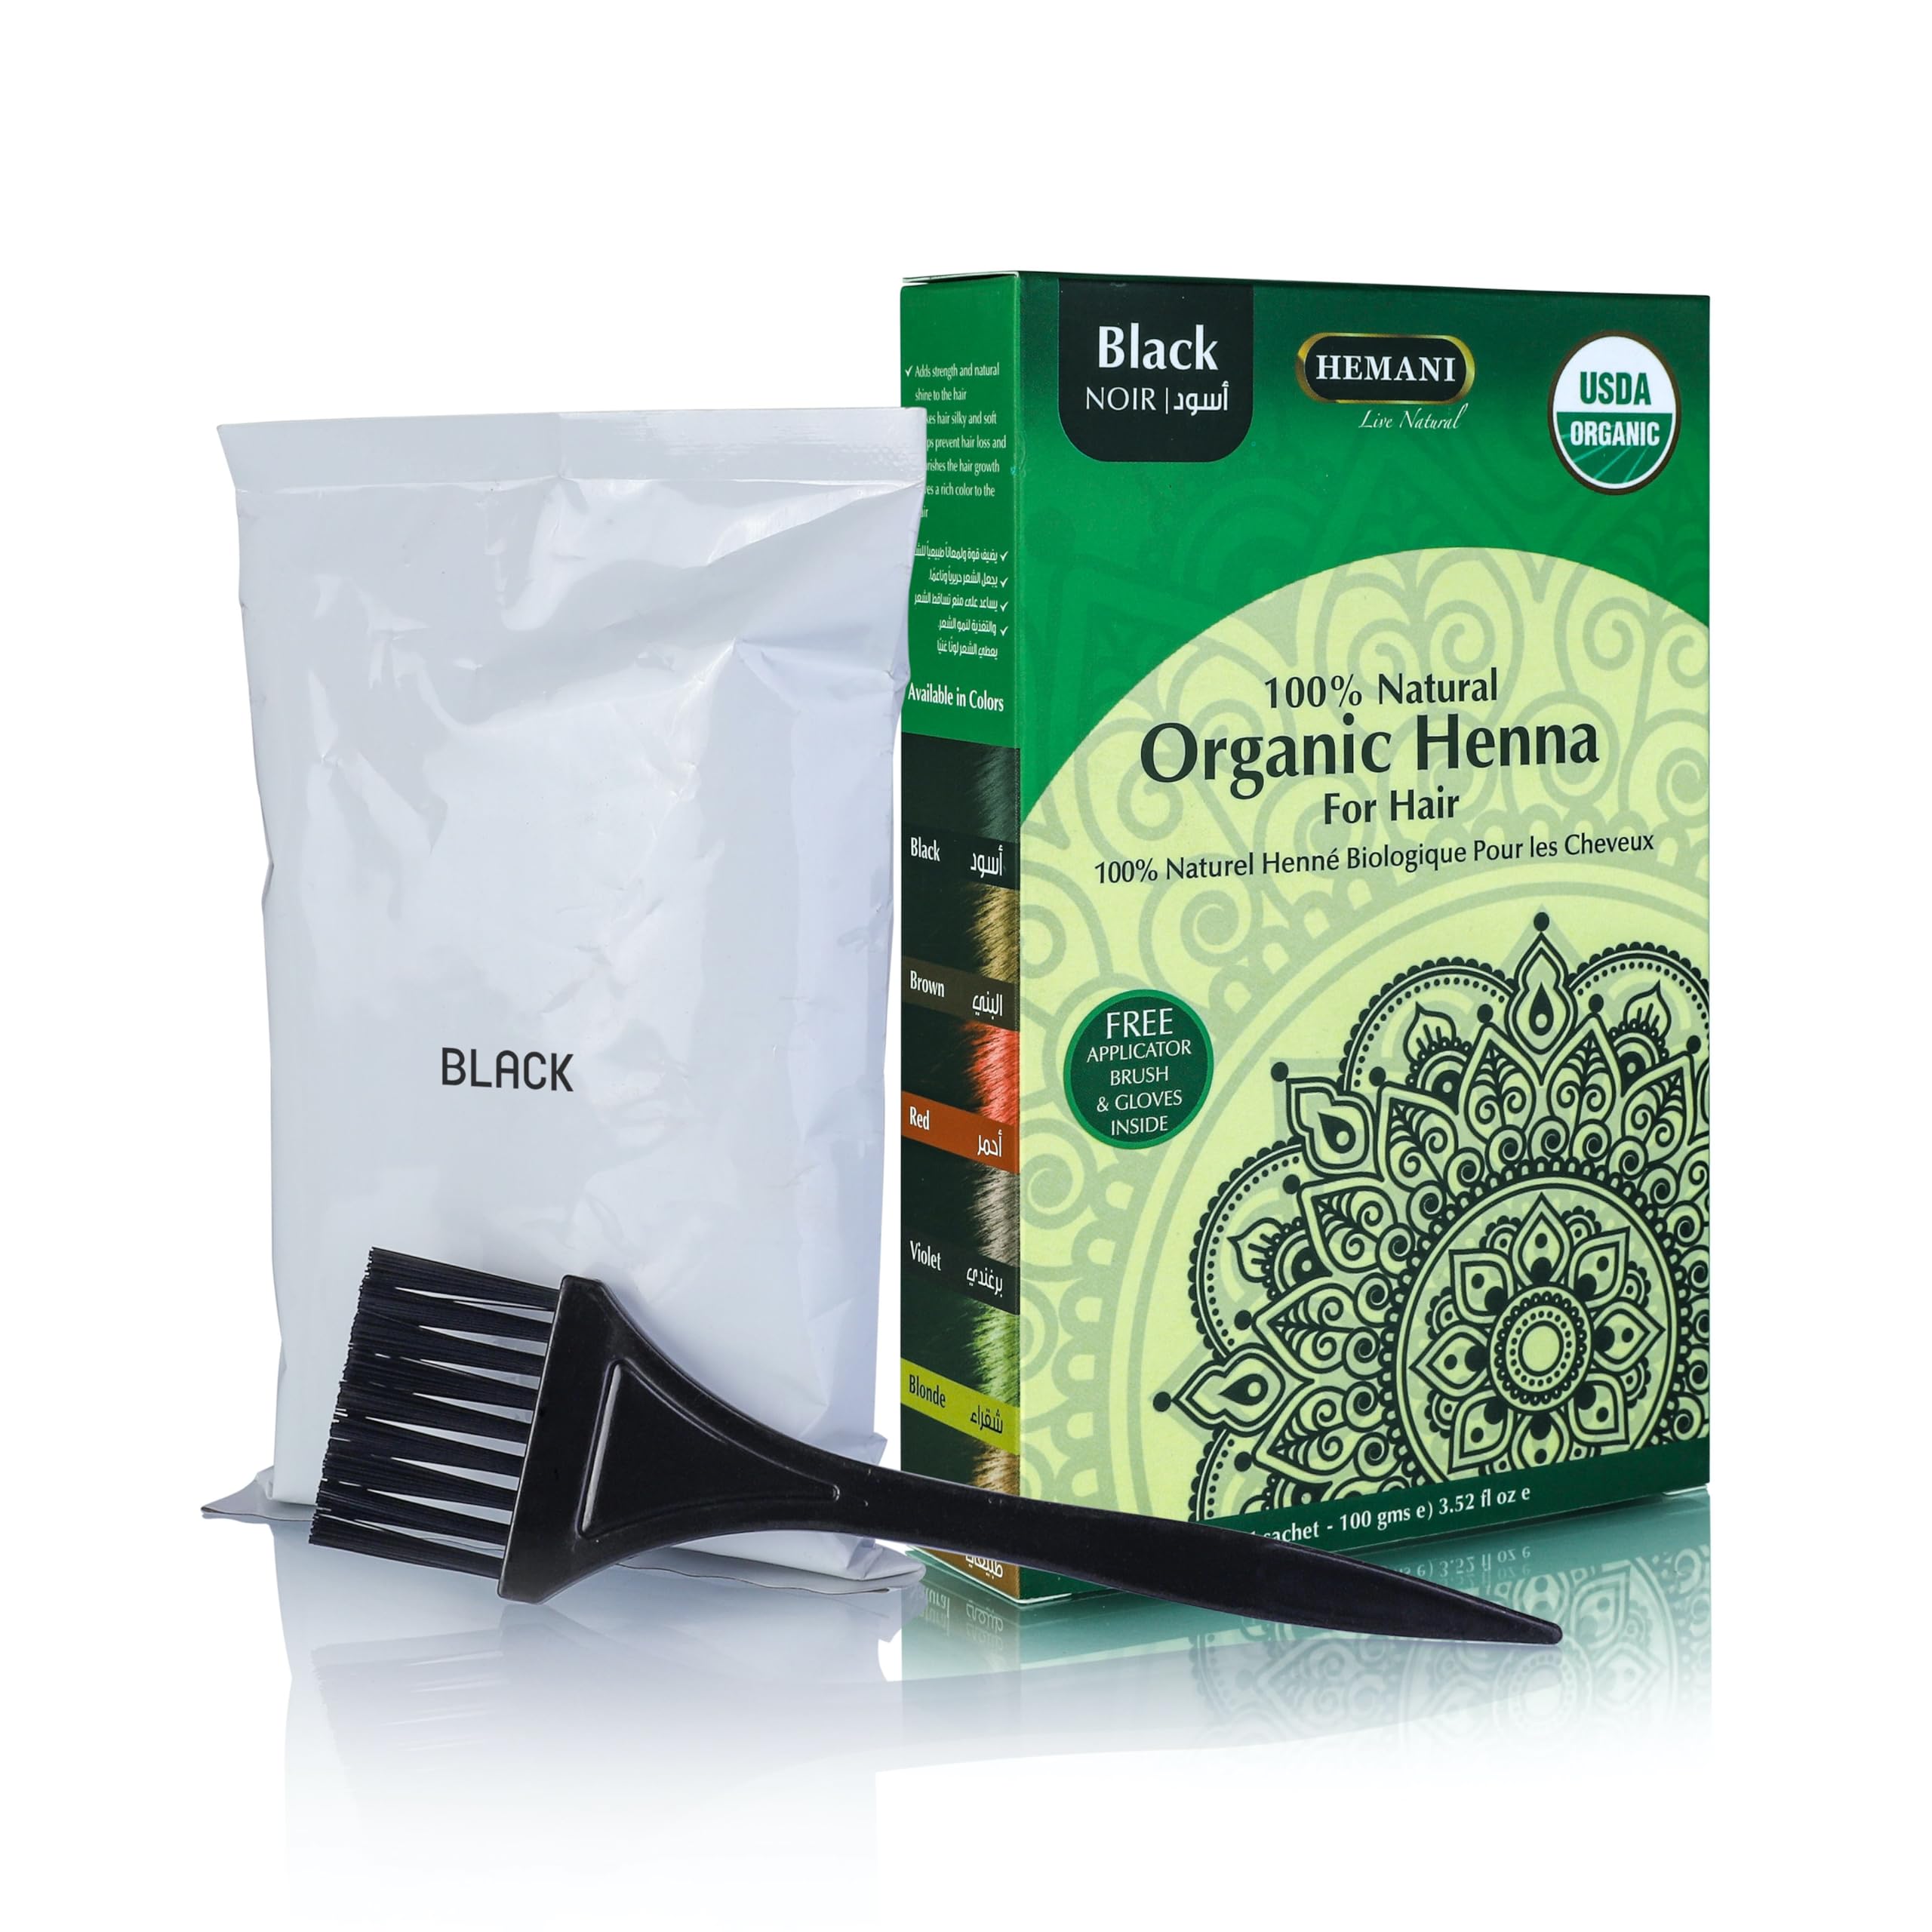 HEMANI Organic Henna Black 100g